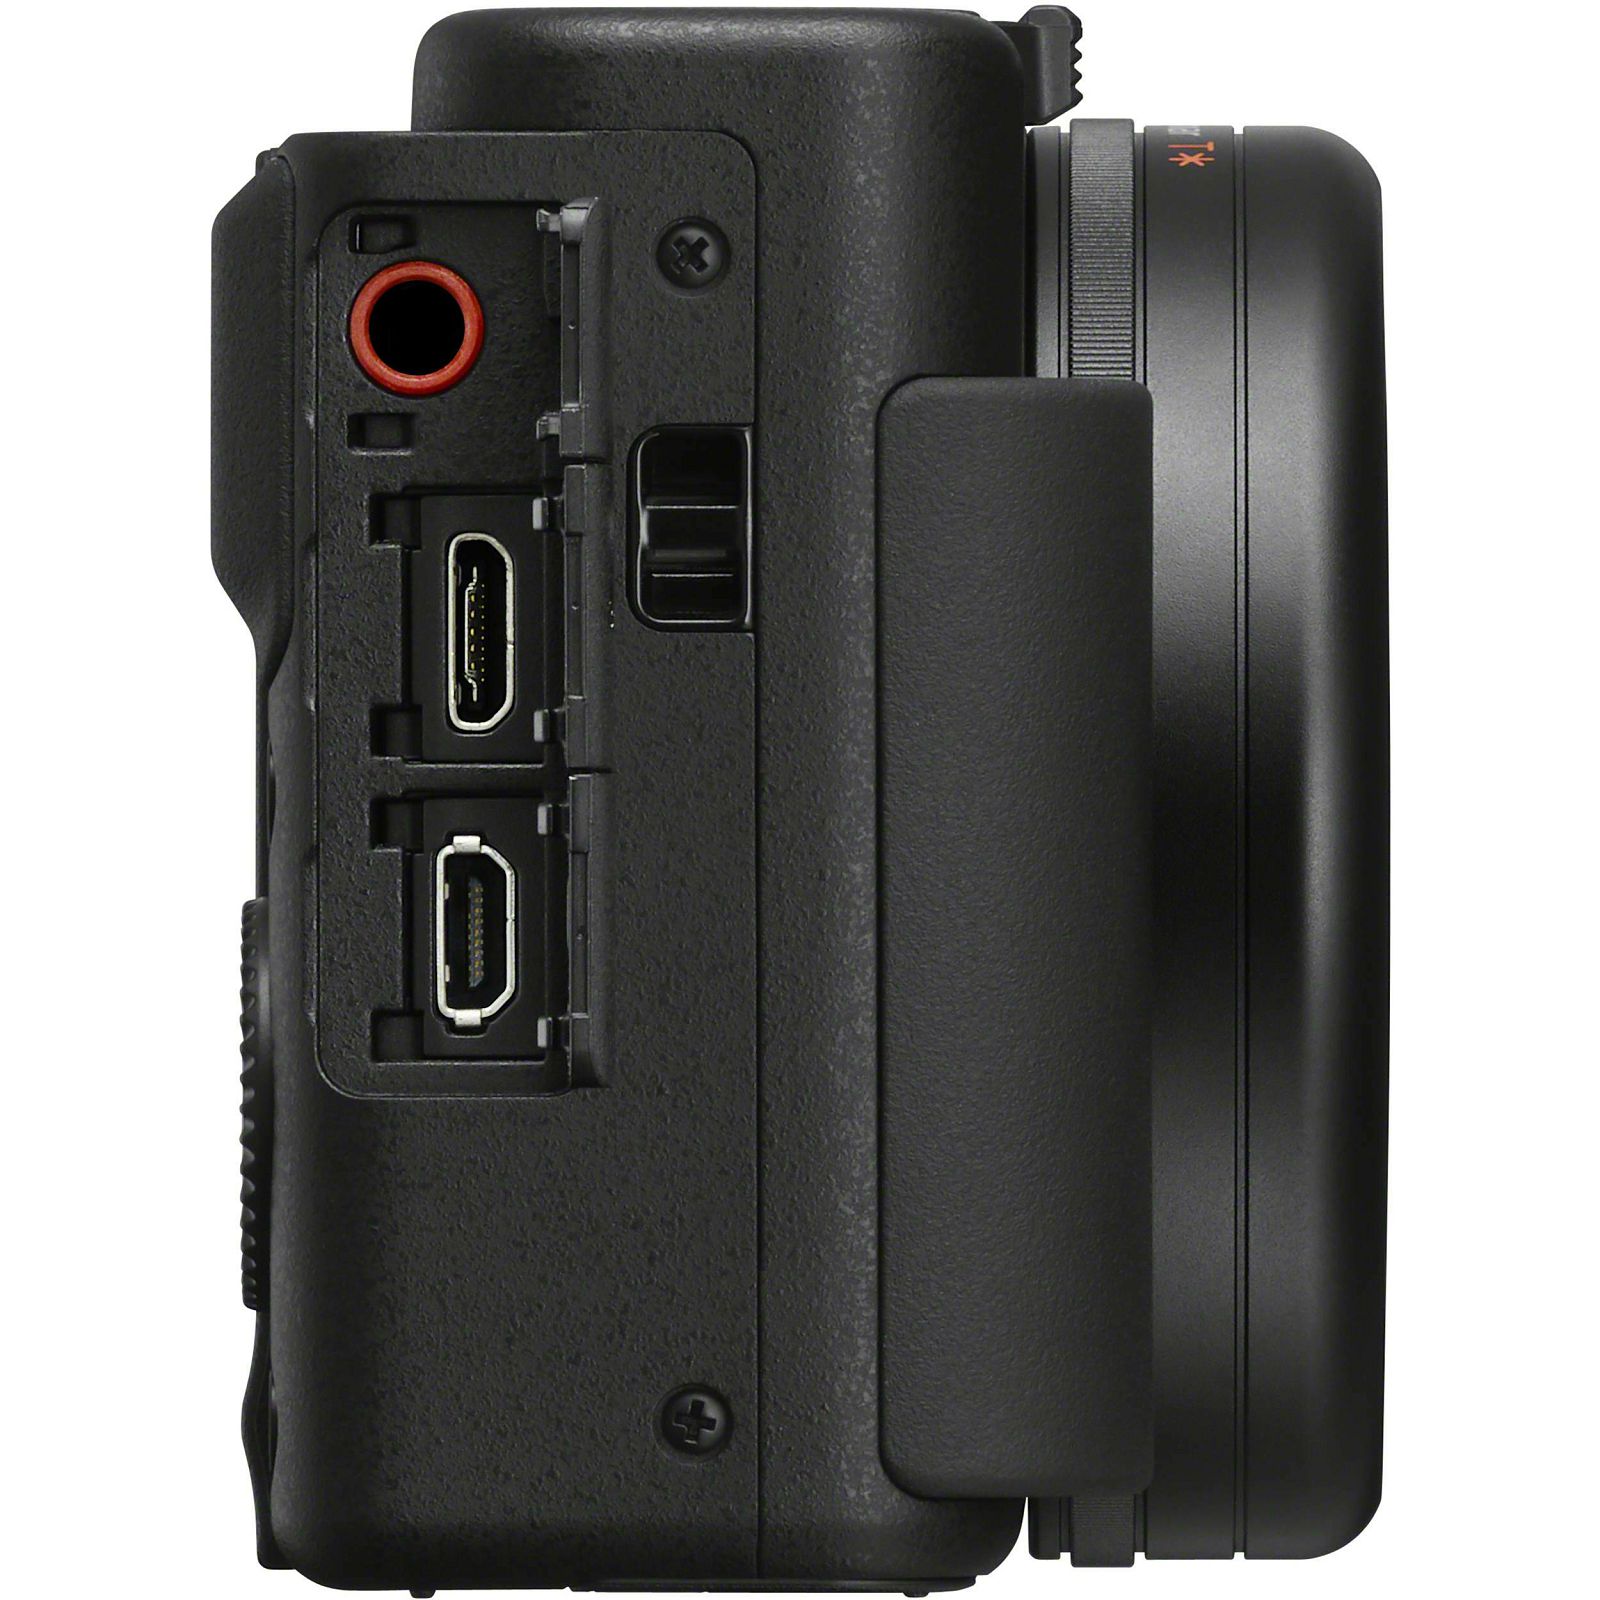 Sony ZV-1 Vlog digitalni fotoaparat ZV1BDI (ZV1BDI.EU)